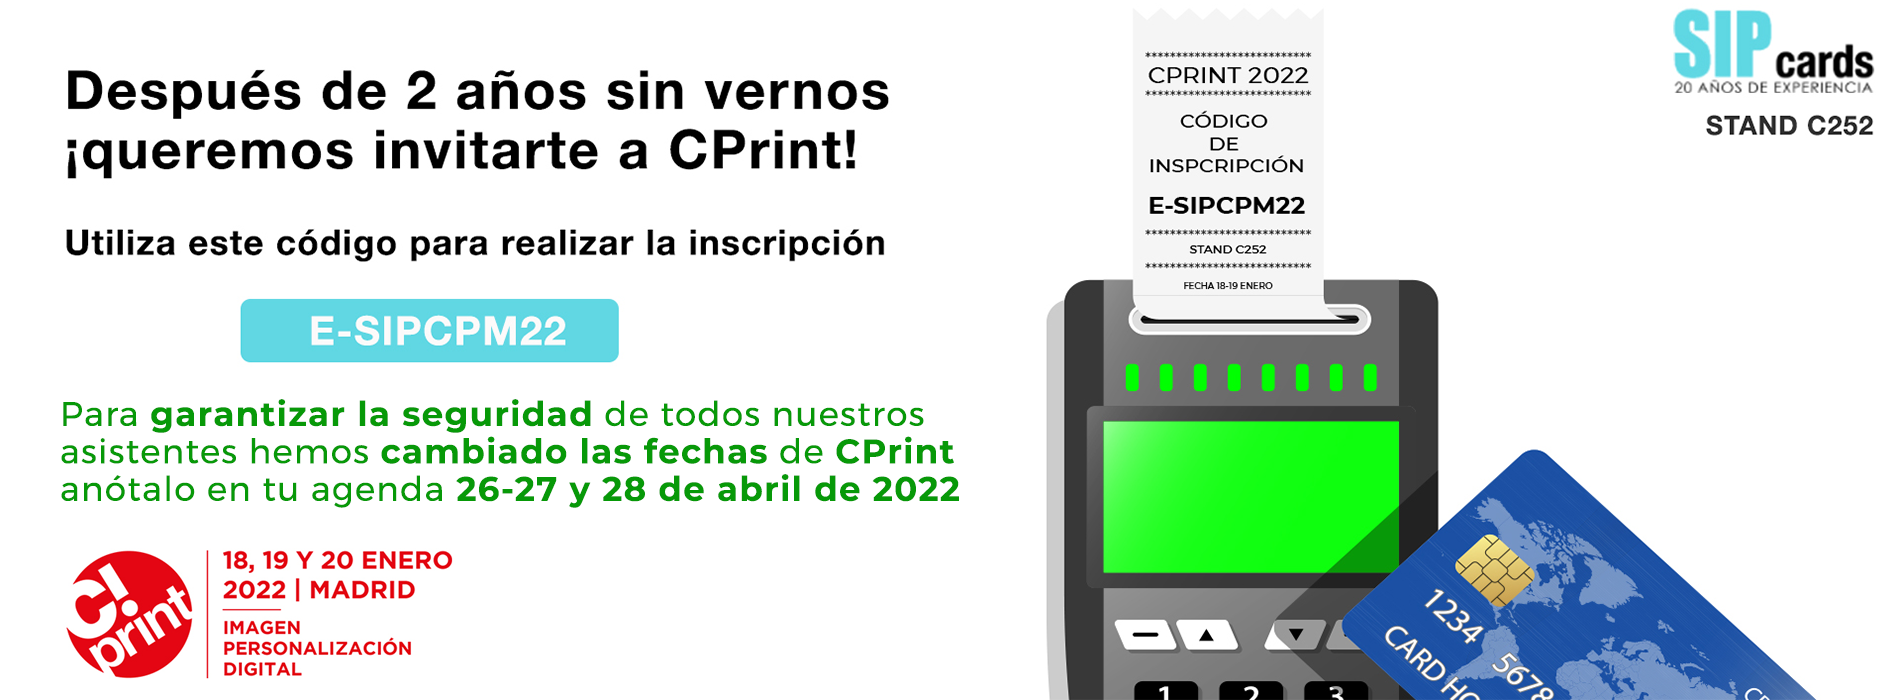 slider cprint nuevo - OLD_Sipcards: La mejor oferta de Impresoras y tarjetas PVC